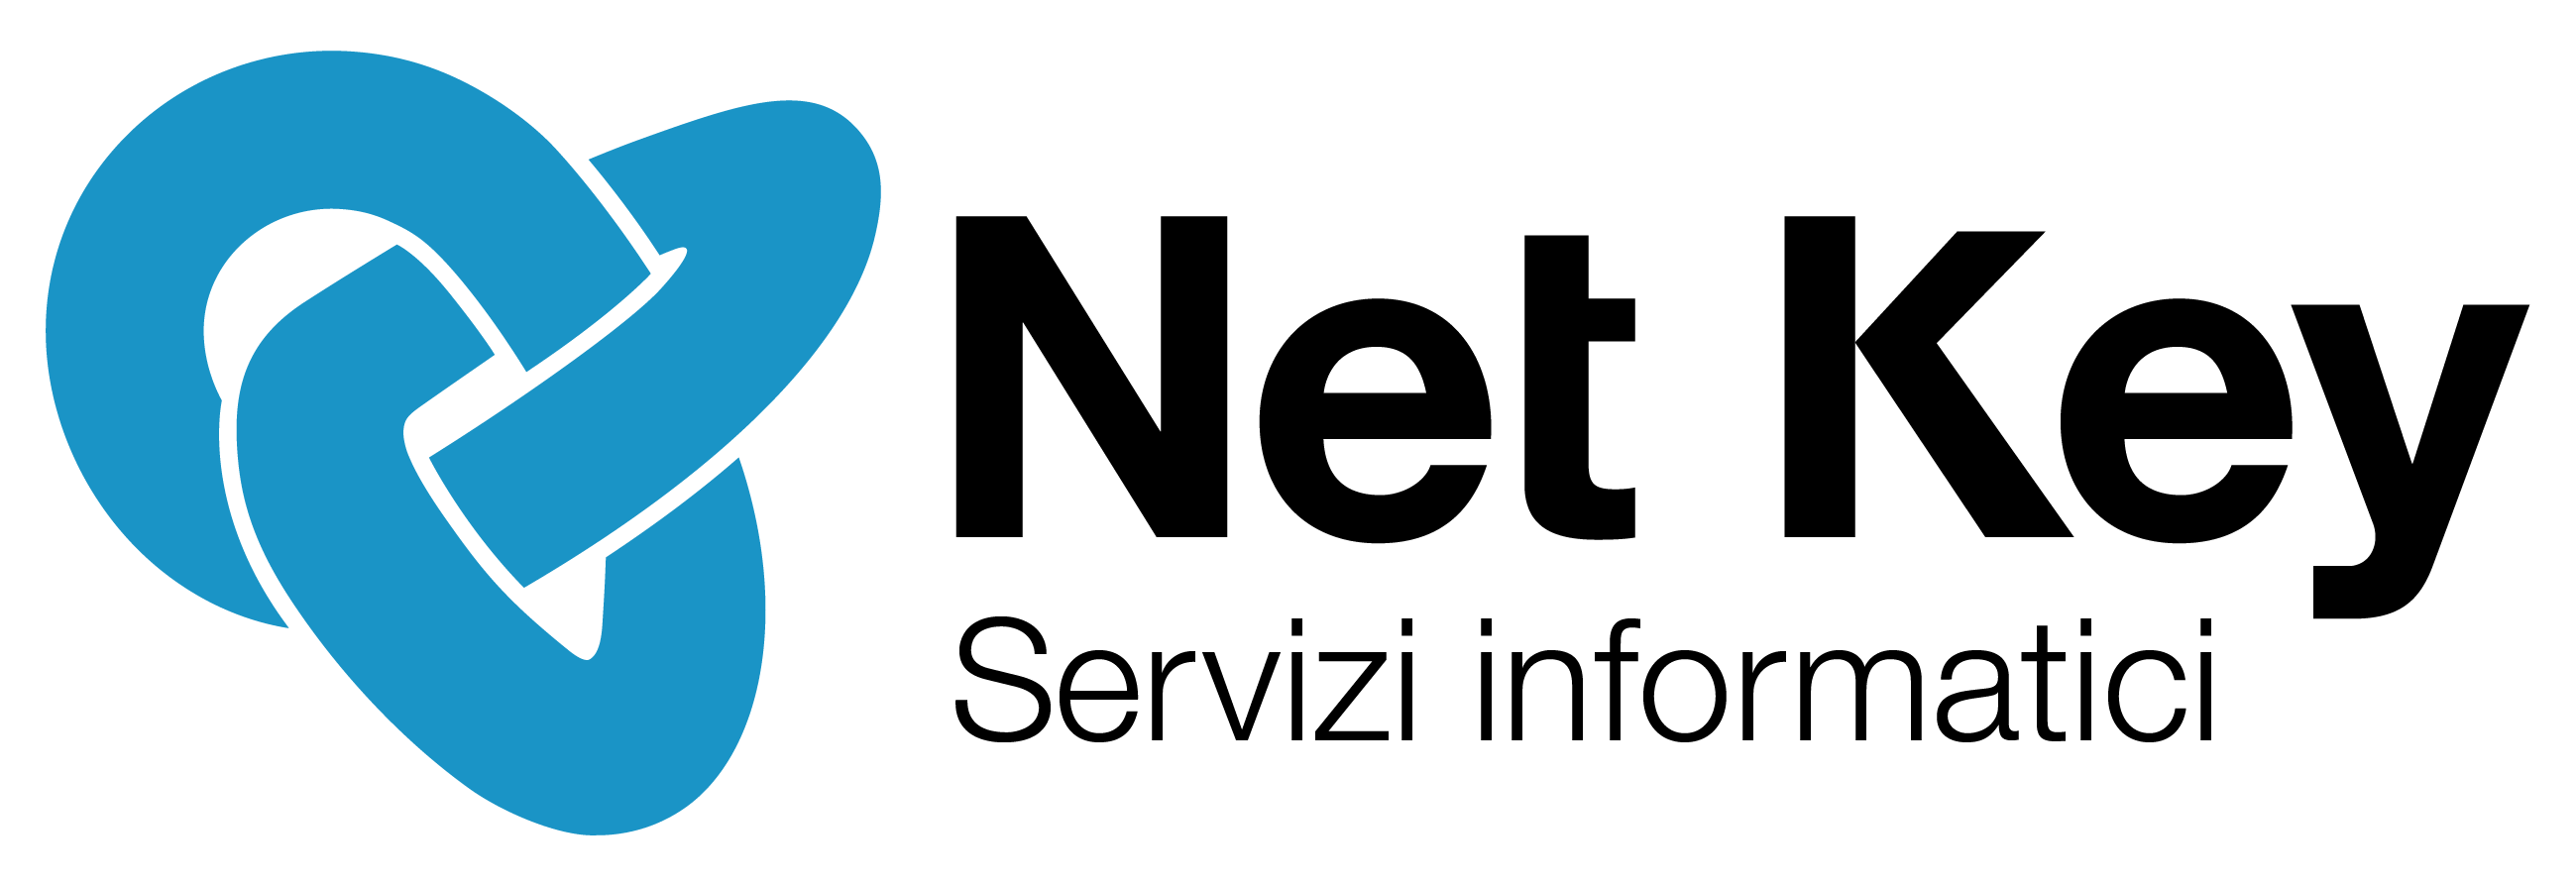 NetKey logo